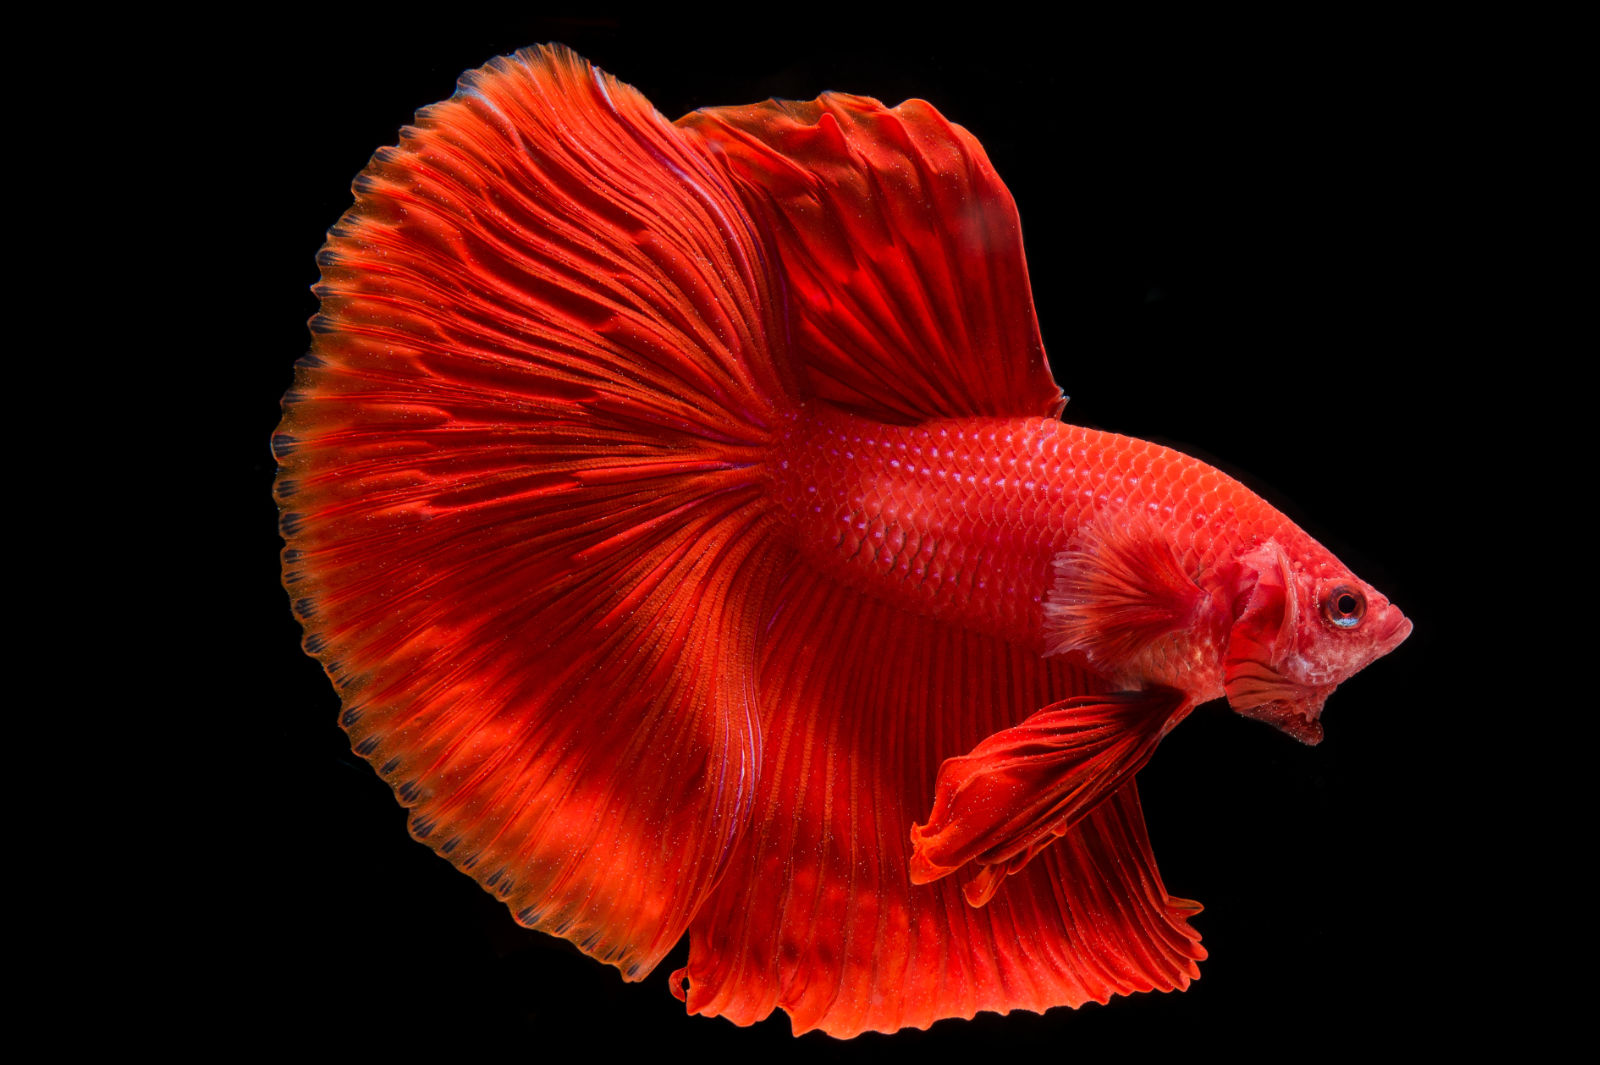 Pesce combattente (Betta splendens) - Colore rosso